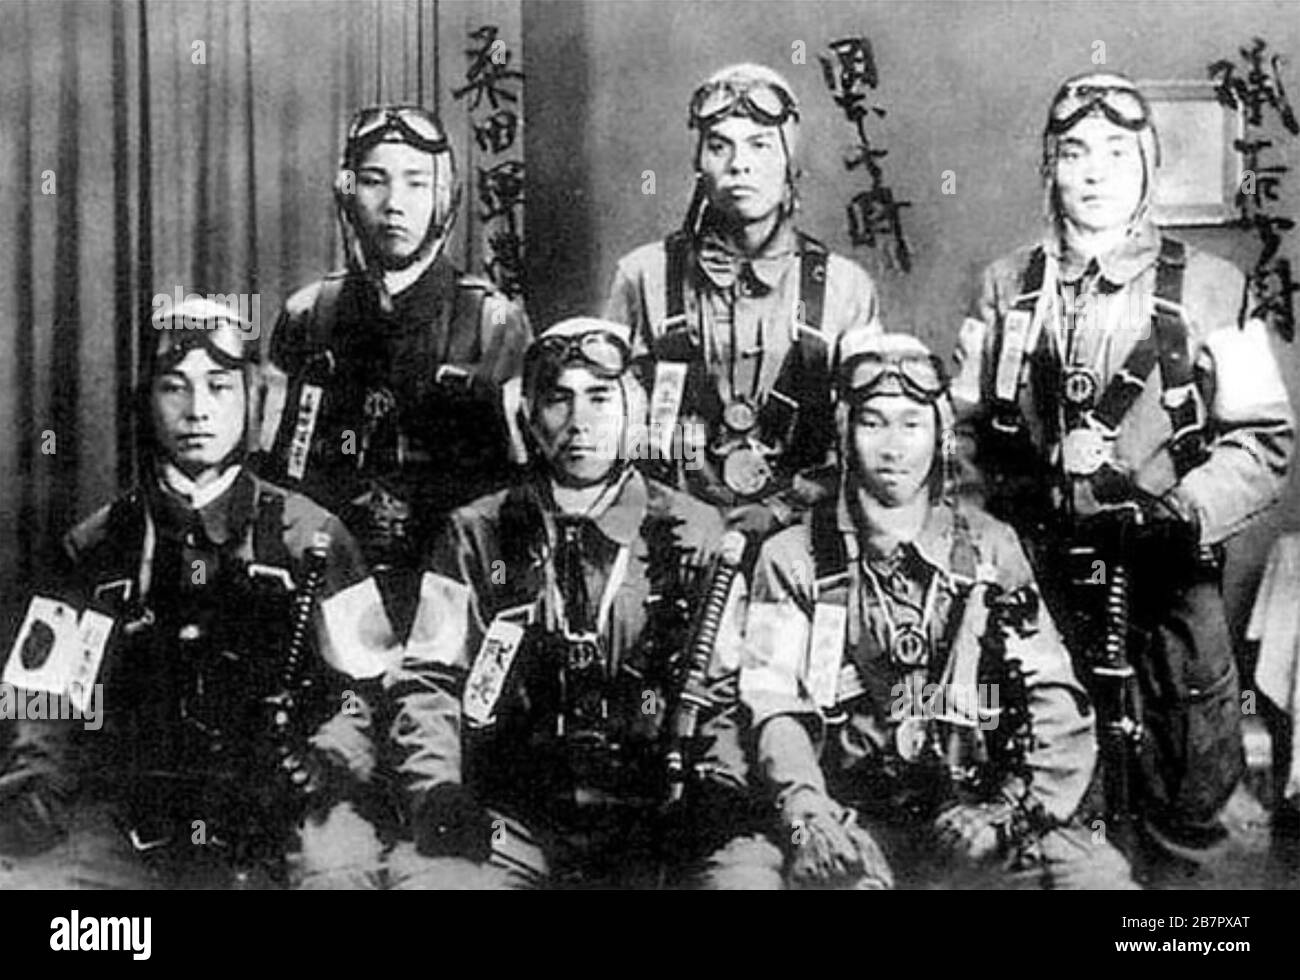 JAPANESE KAMIKAZE PILOTS 1945 Stock Photo